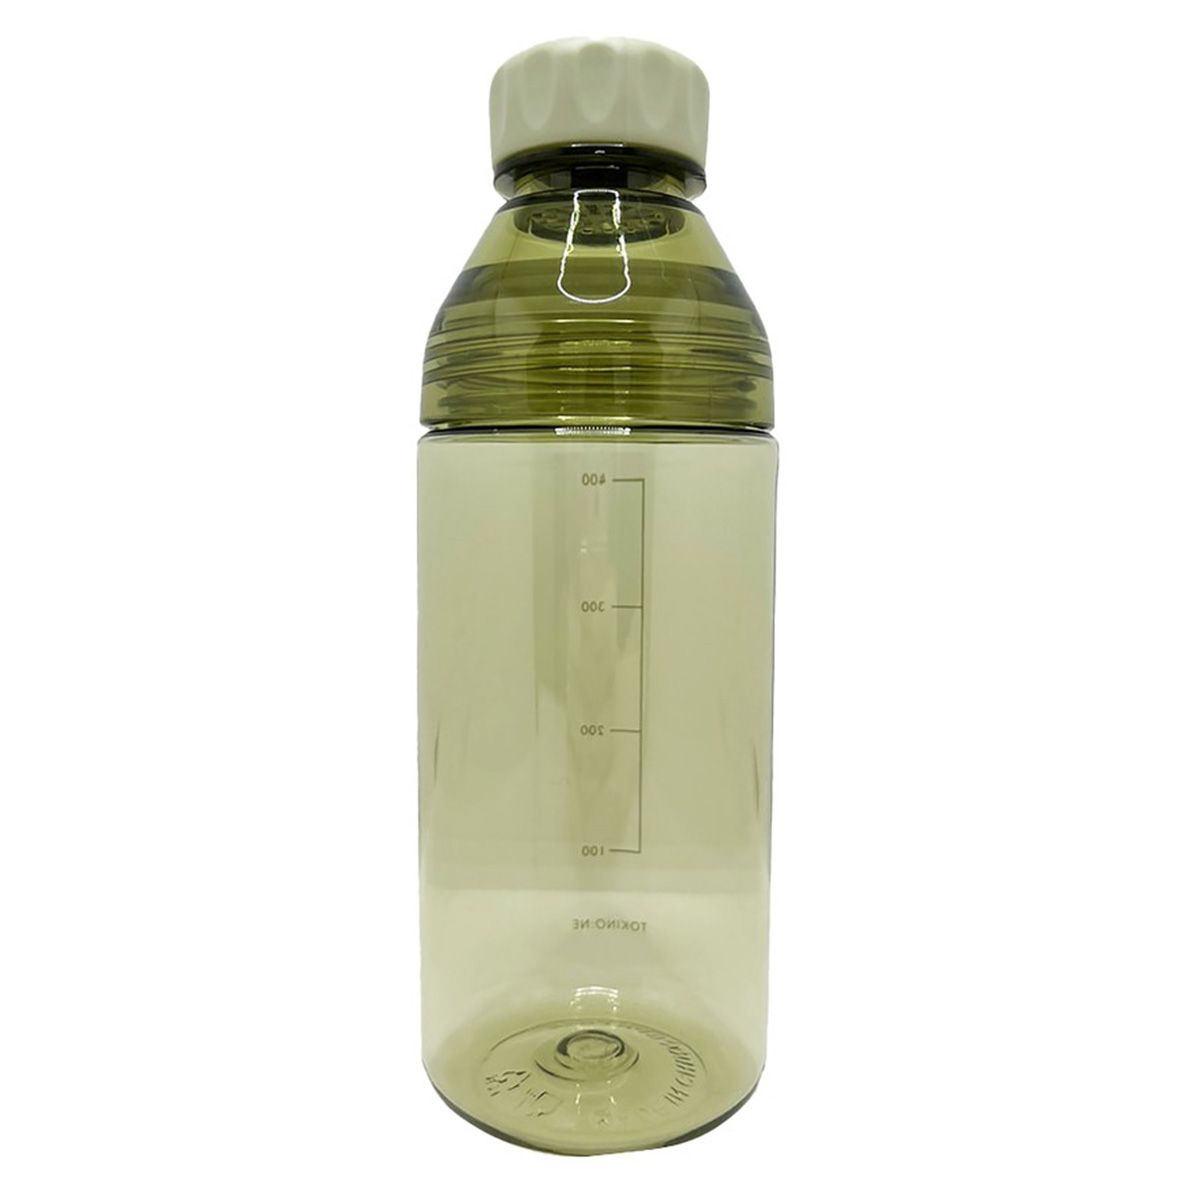 ウォーターボトル ドリンクボトル 洗いやすい Tokinone PB. 洗えるボトル 400ml グリーン 063537